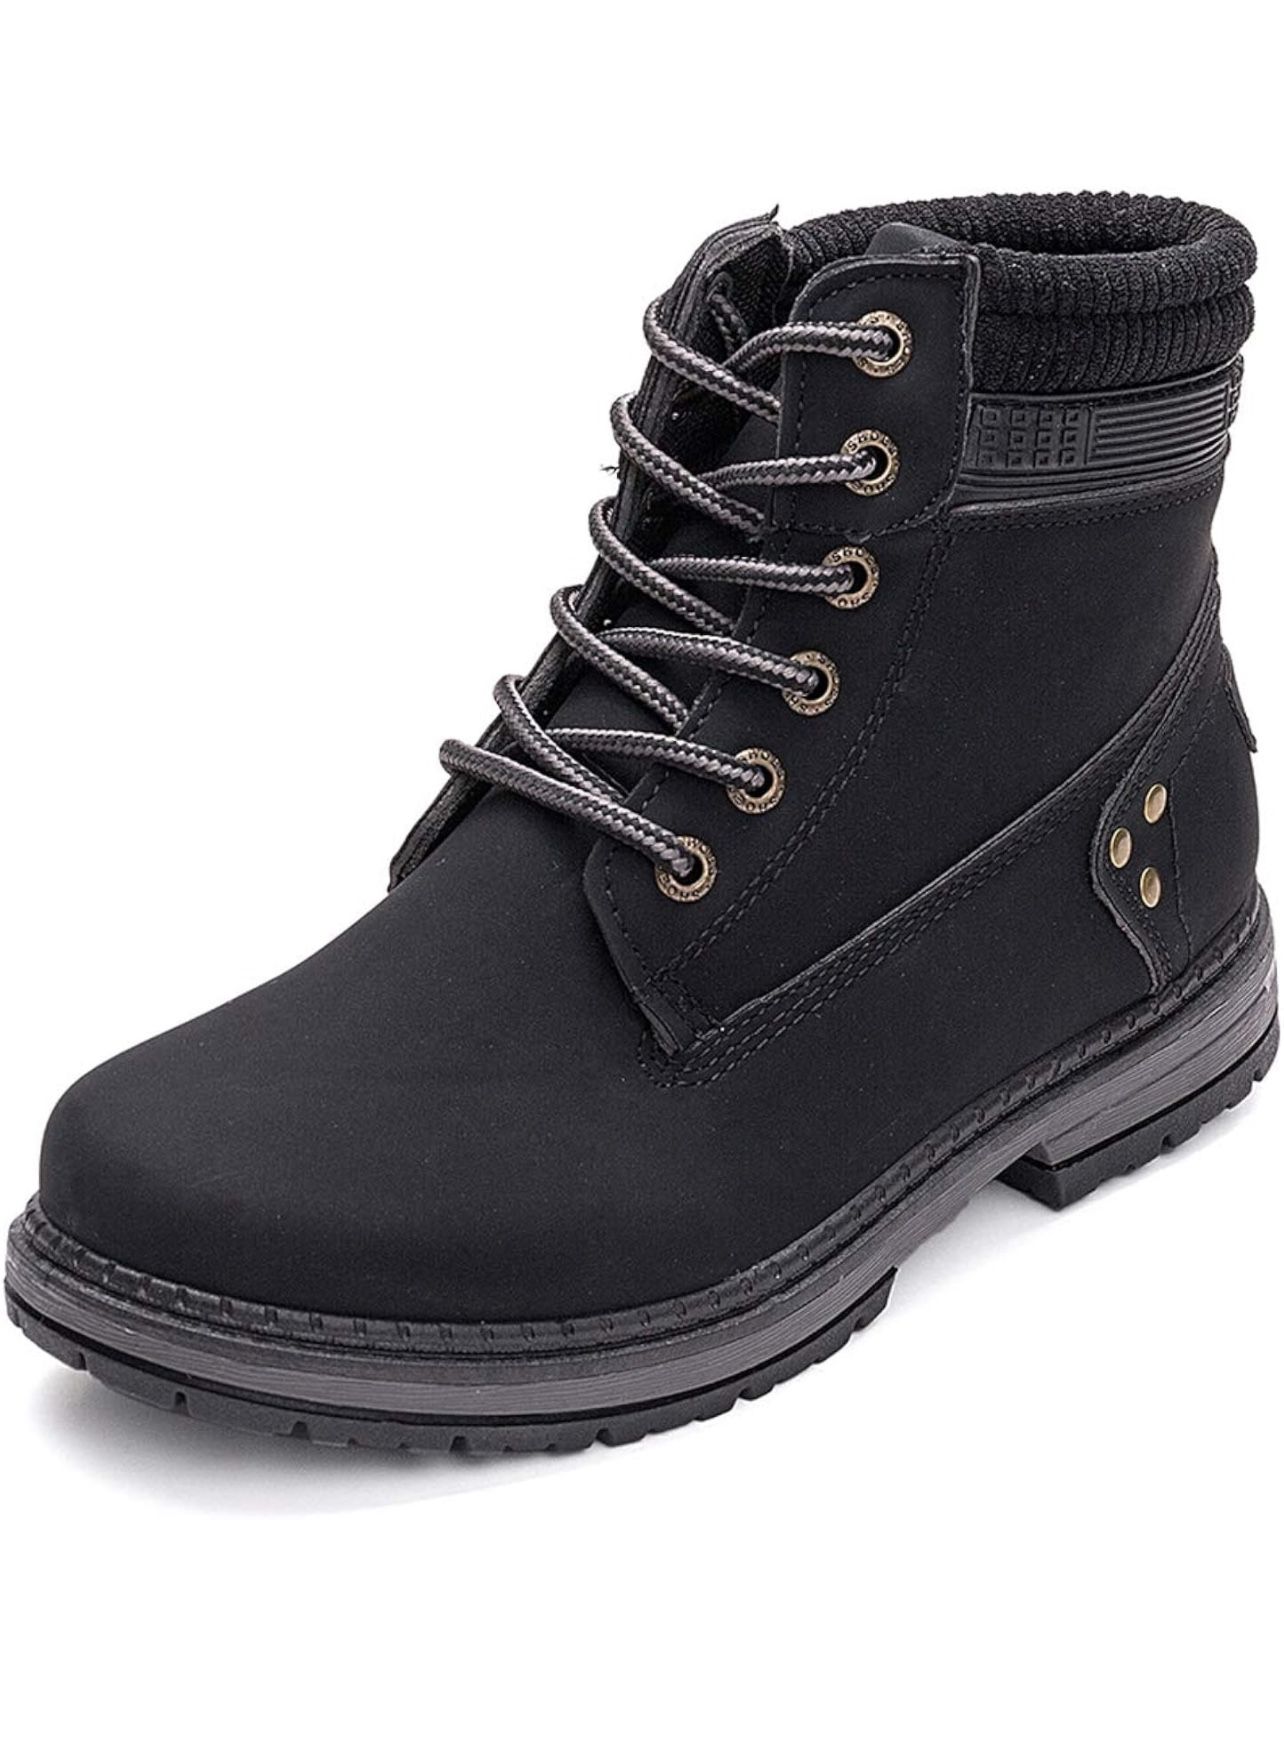 Waterproof Boots - Women’s Size 10.5